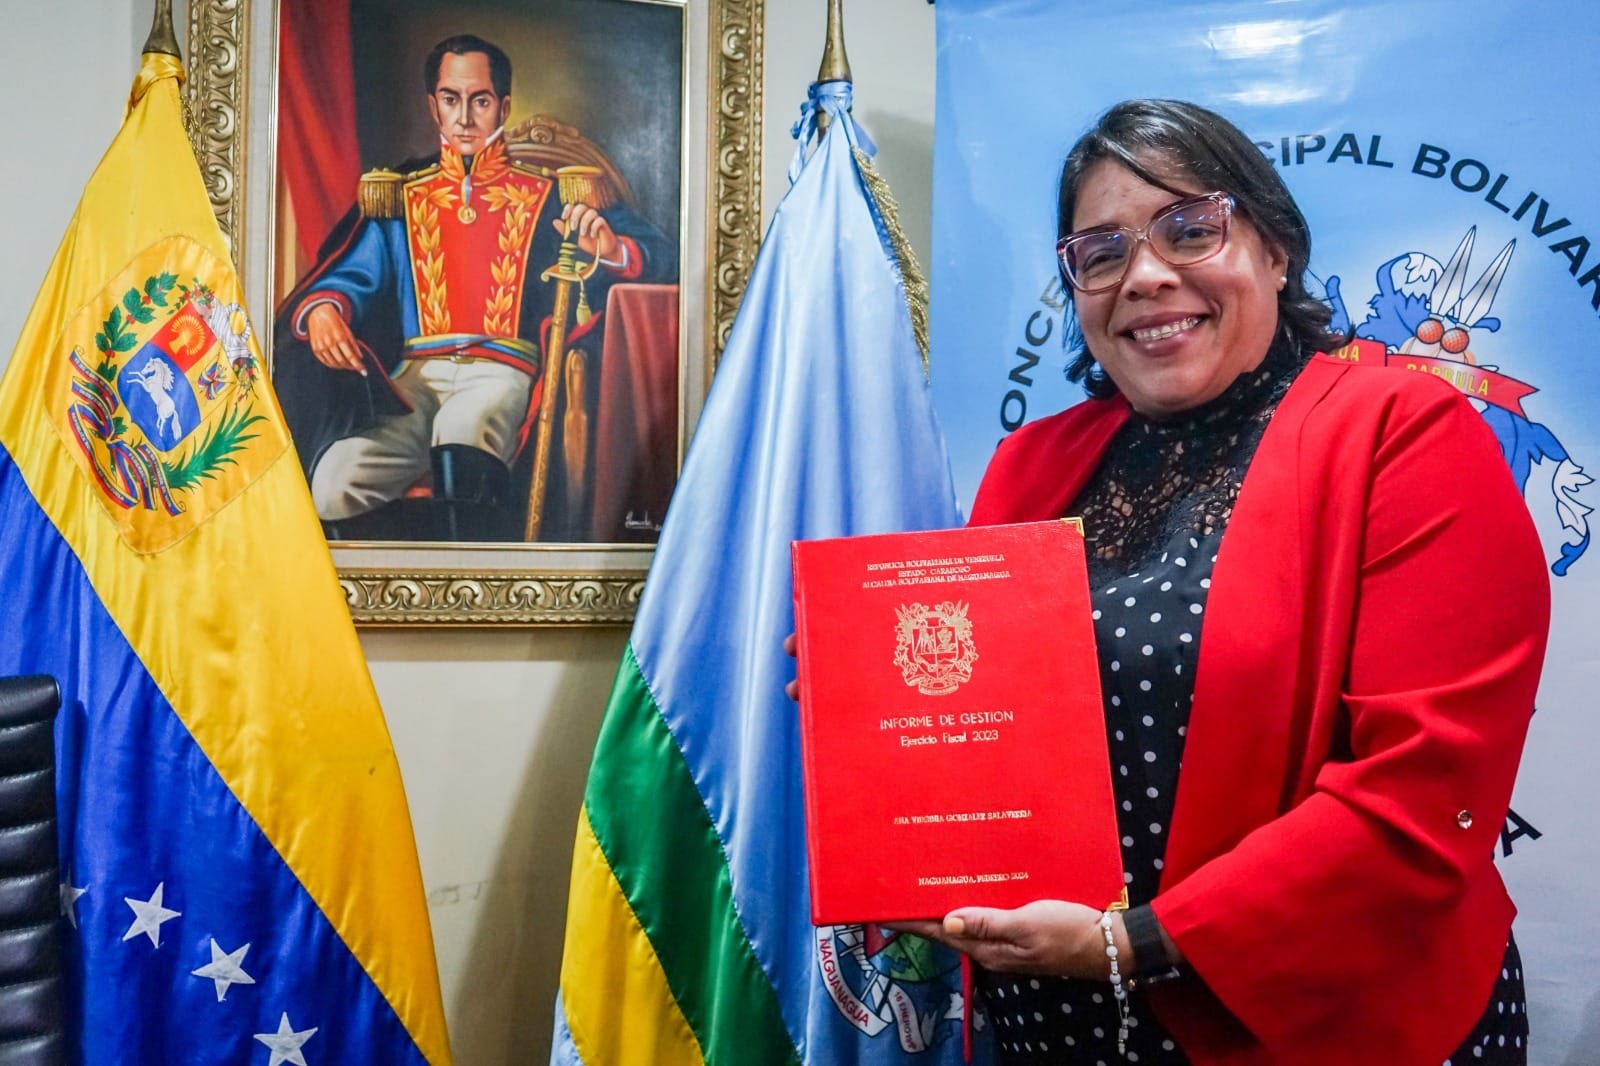 Alcaldesa Ana González entregó informe de gestión - Alcaldesa Ana González entregó informe de gestión